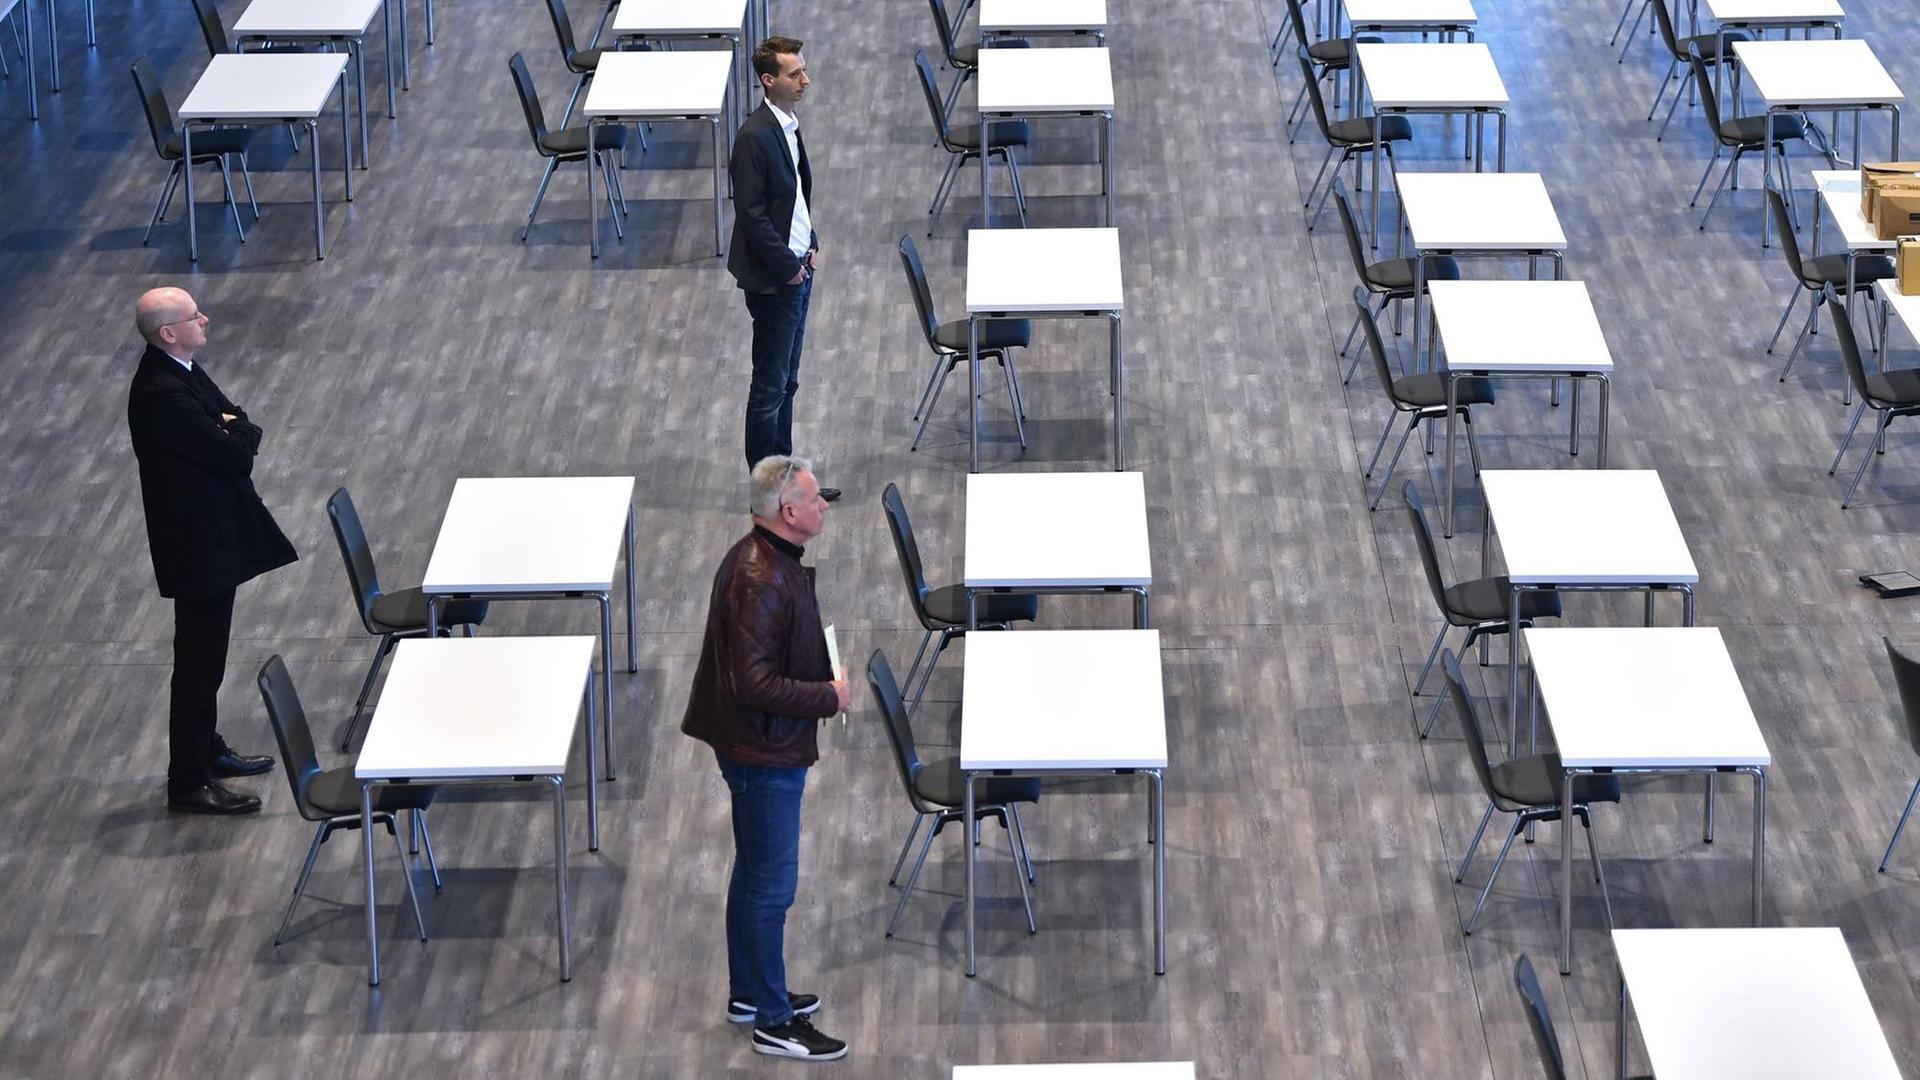 Drei Thüringer Landtagsmitarbeiter besichtigen einen Saal mit Tischen und Stühlen.